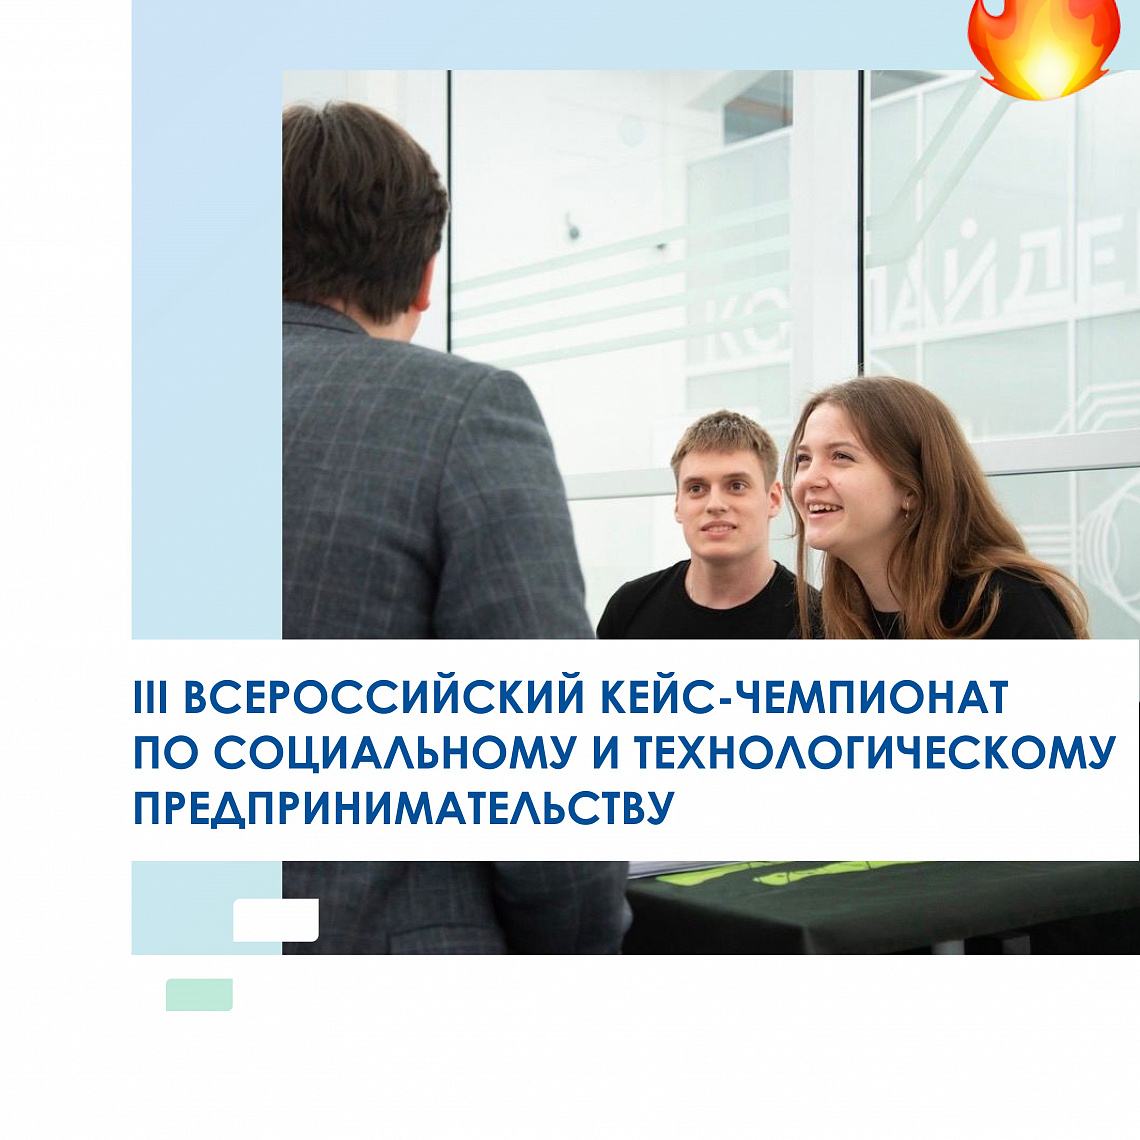 1 апреля стартует III Всероссийский кейс-чемпионат по социальному и технологическому предпринимательству MIR для школьников и студентов